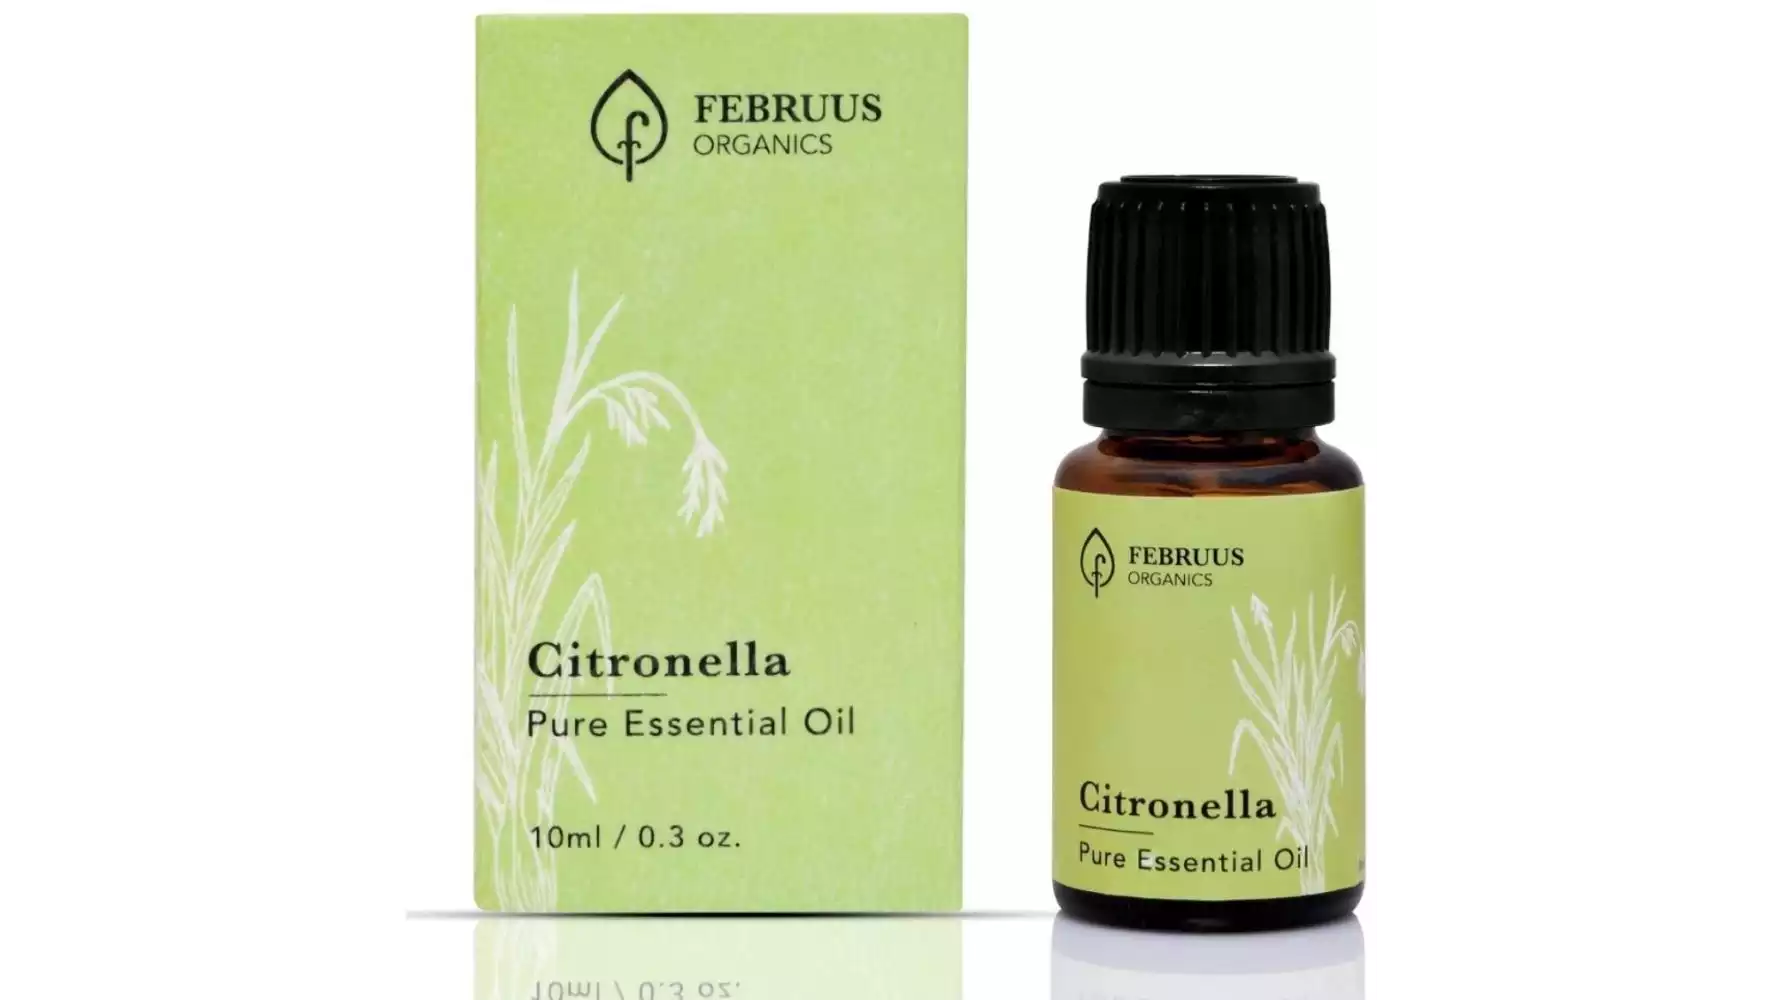 Februus Organics Citronella Essential Oil (10ml)